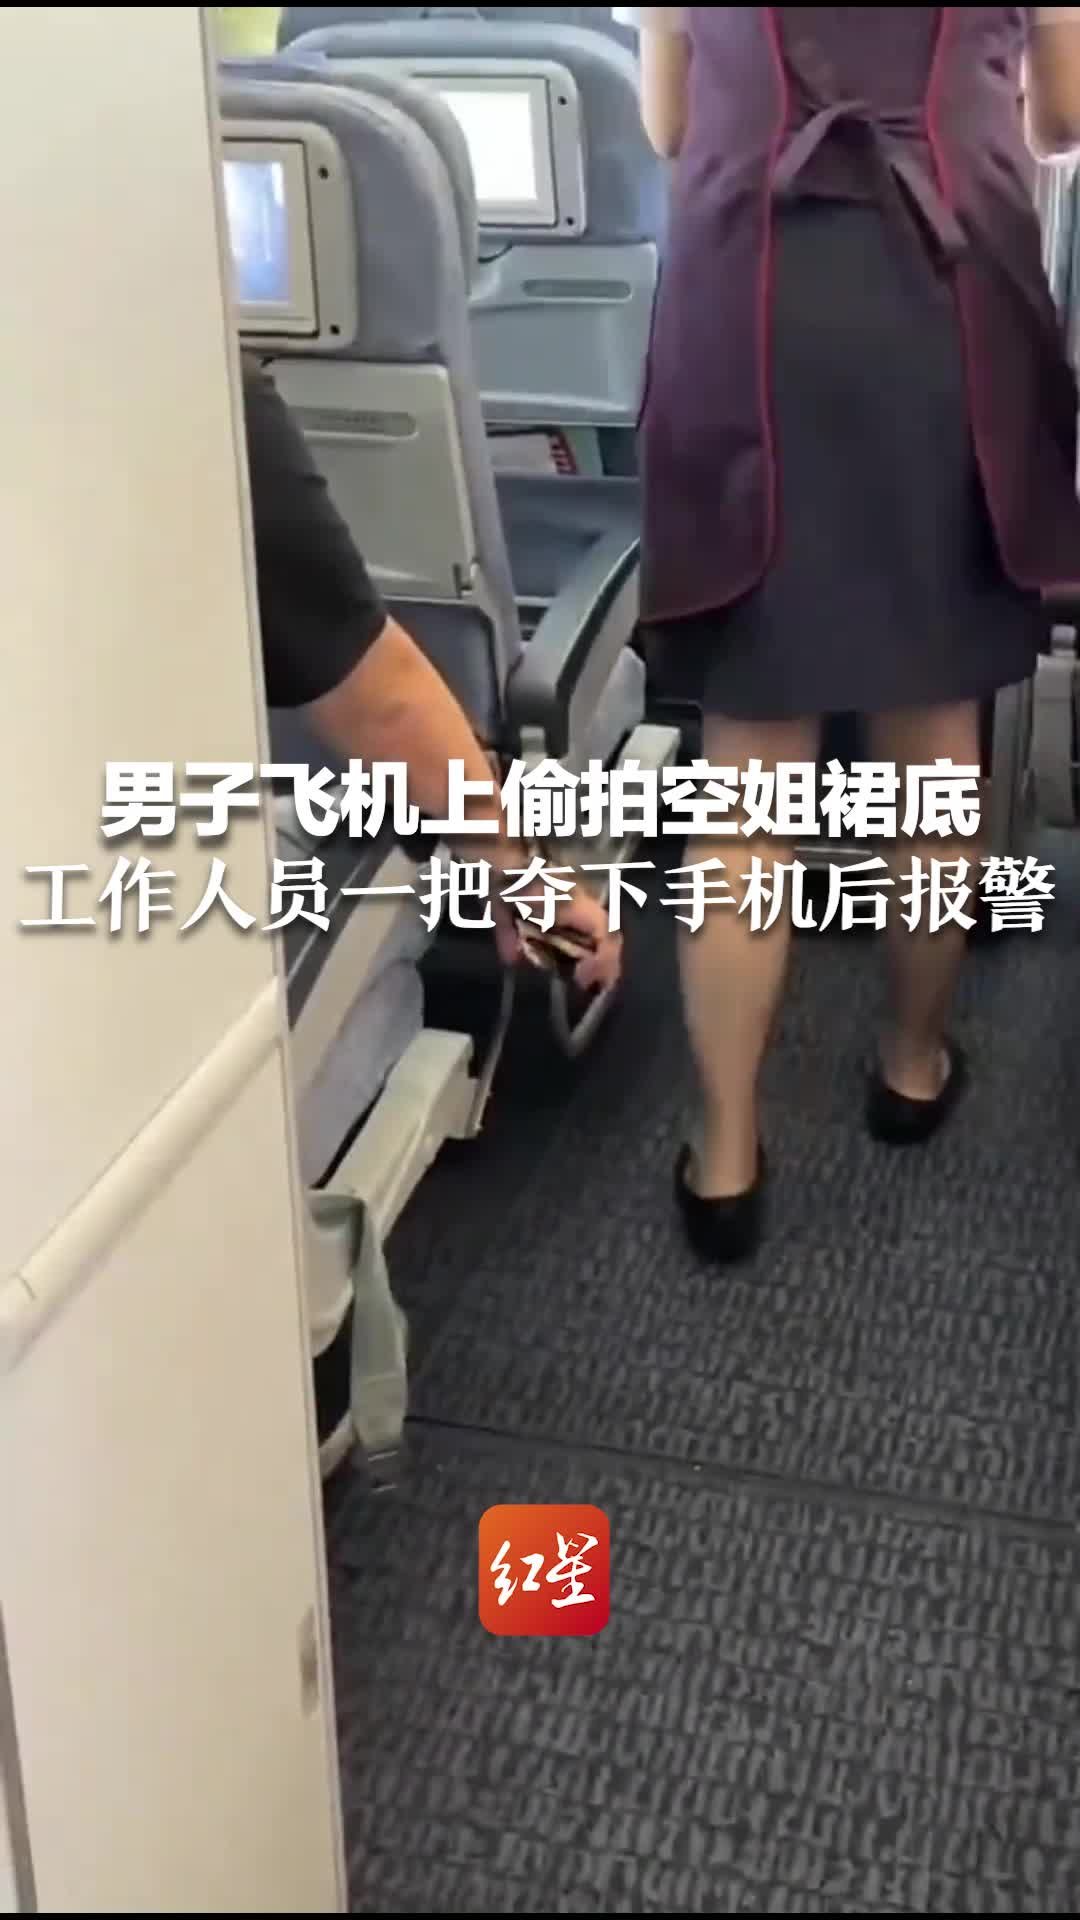 台湾知名空姐刚辞职做网红却给丈夫带绿帽 男方愤而曝光_航空要闻_资讯_航空圈